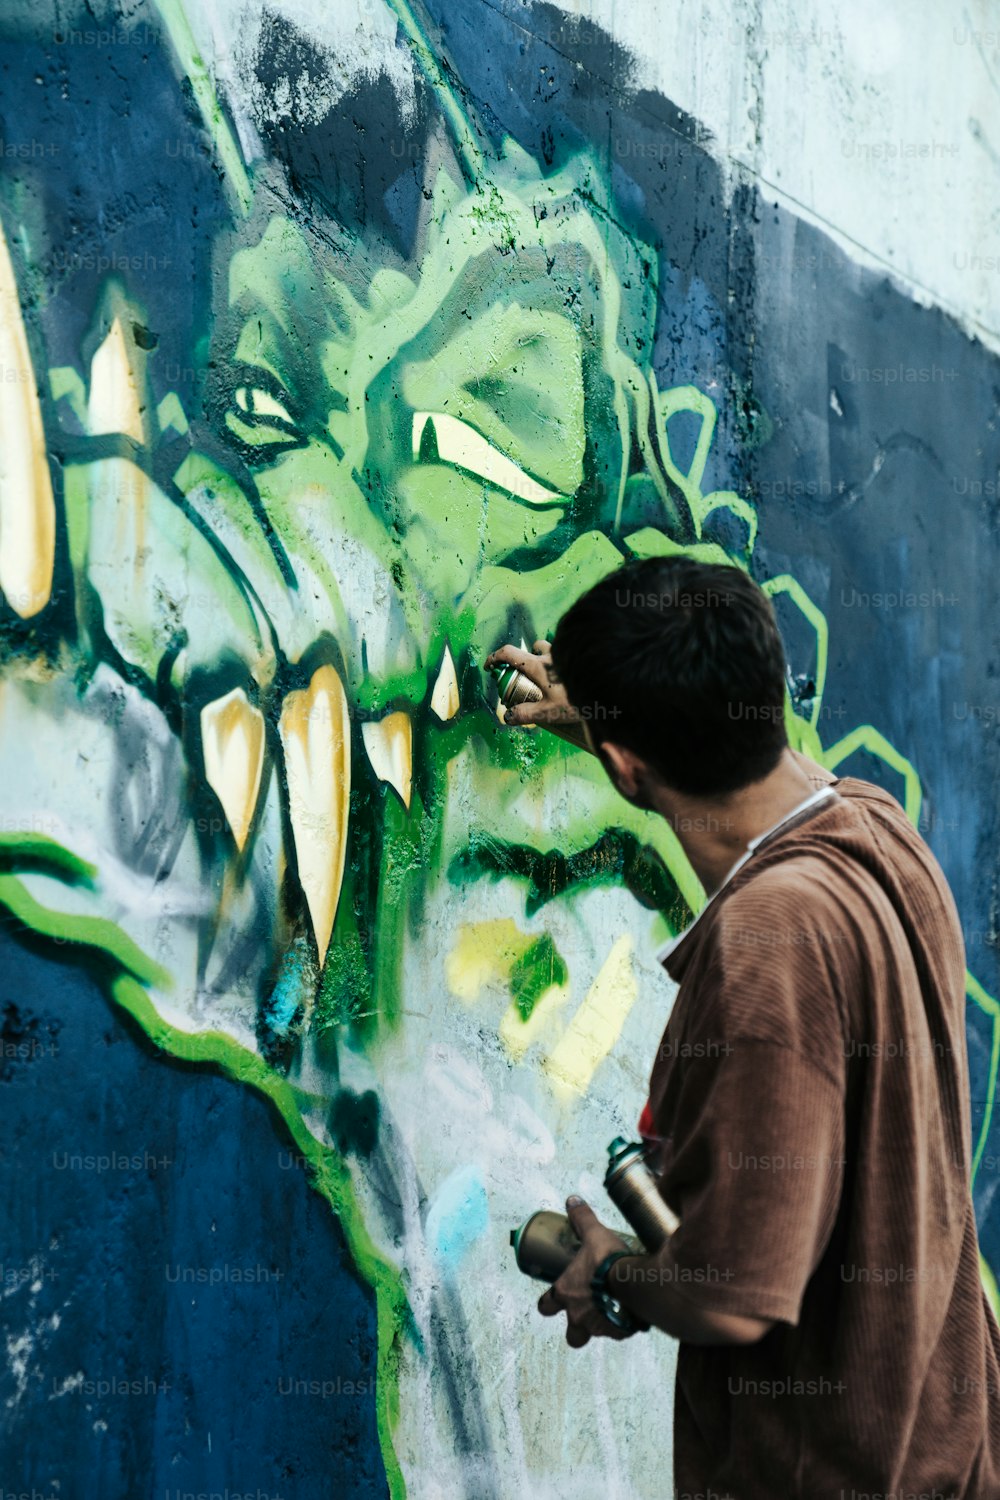 Un homme peignant des graffitis sur un mur